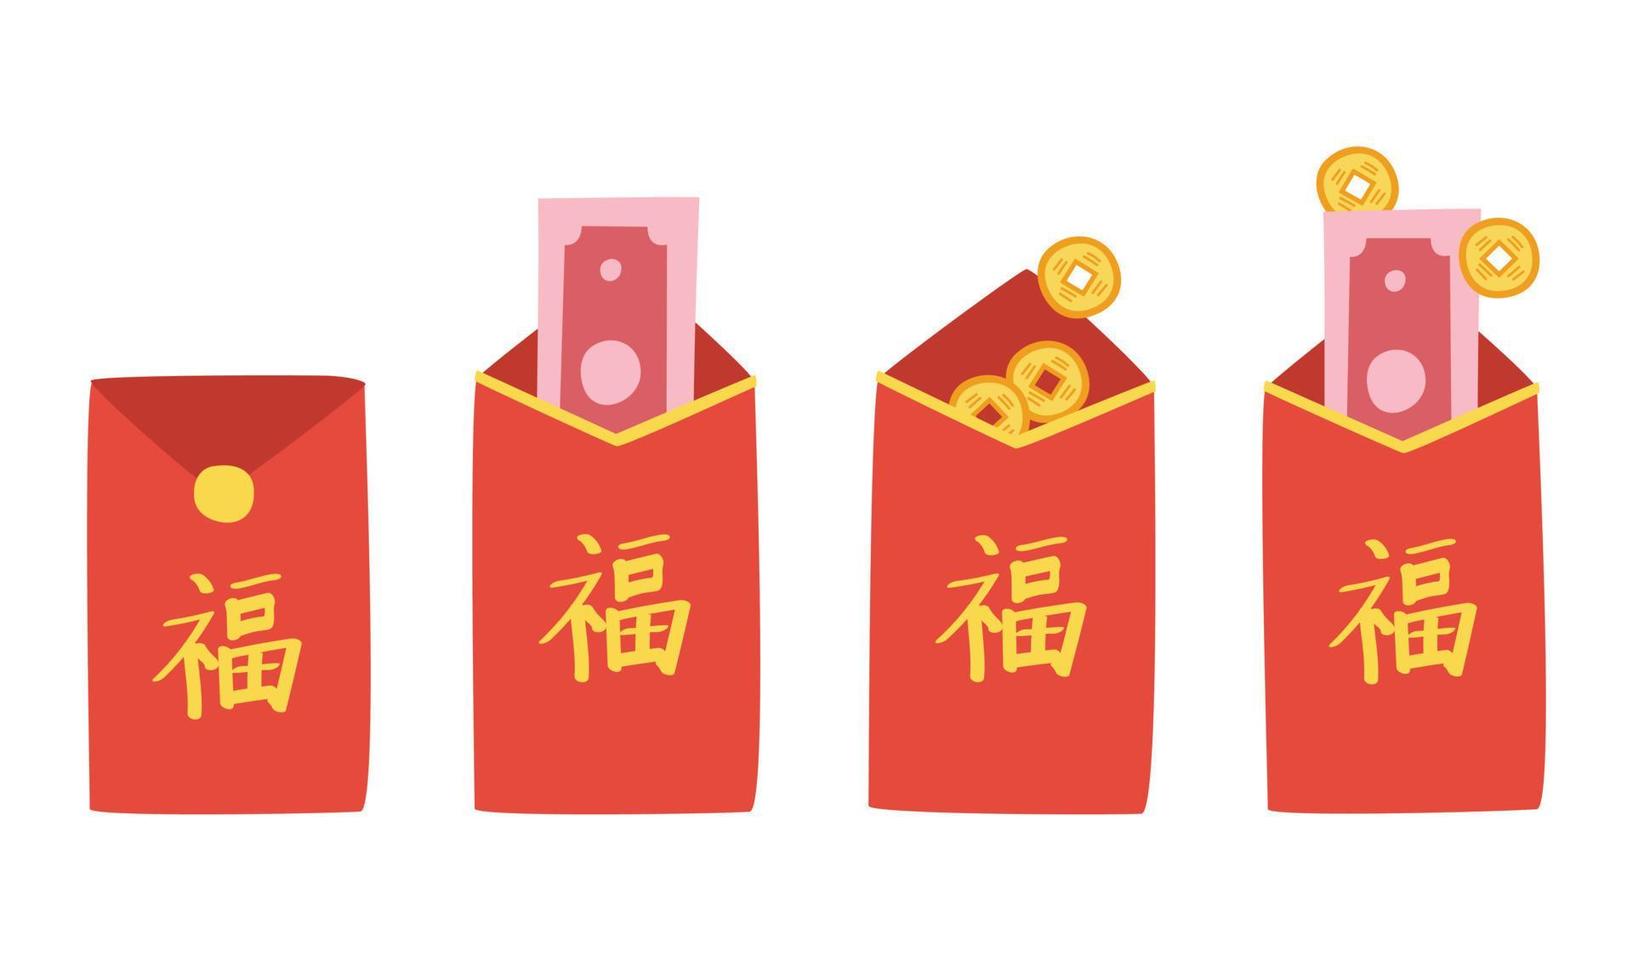 conjunto vetorial de clipart de envelope vermelho do ano novo chinês. envelope vermelho simples com dinheiro de sorte de papel e desenho de desenhos animados de ilustração plana de moedas. texto chinês que significa boa sorte. conceito de ano novo lunar vetor